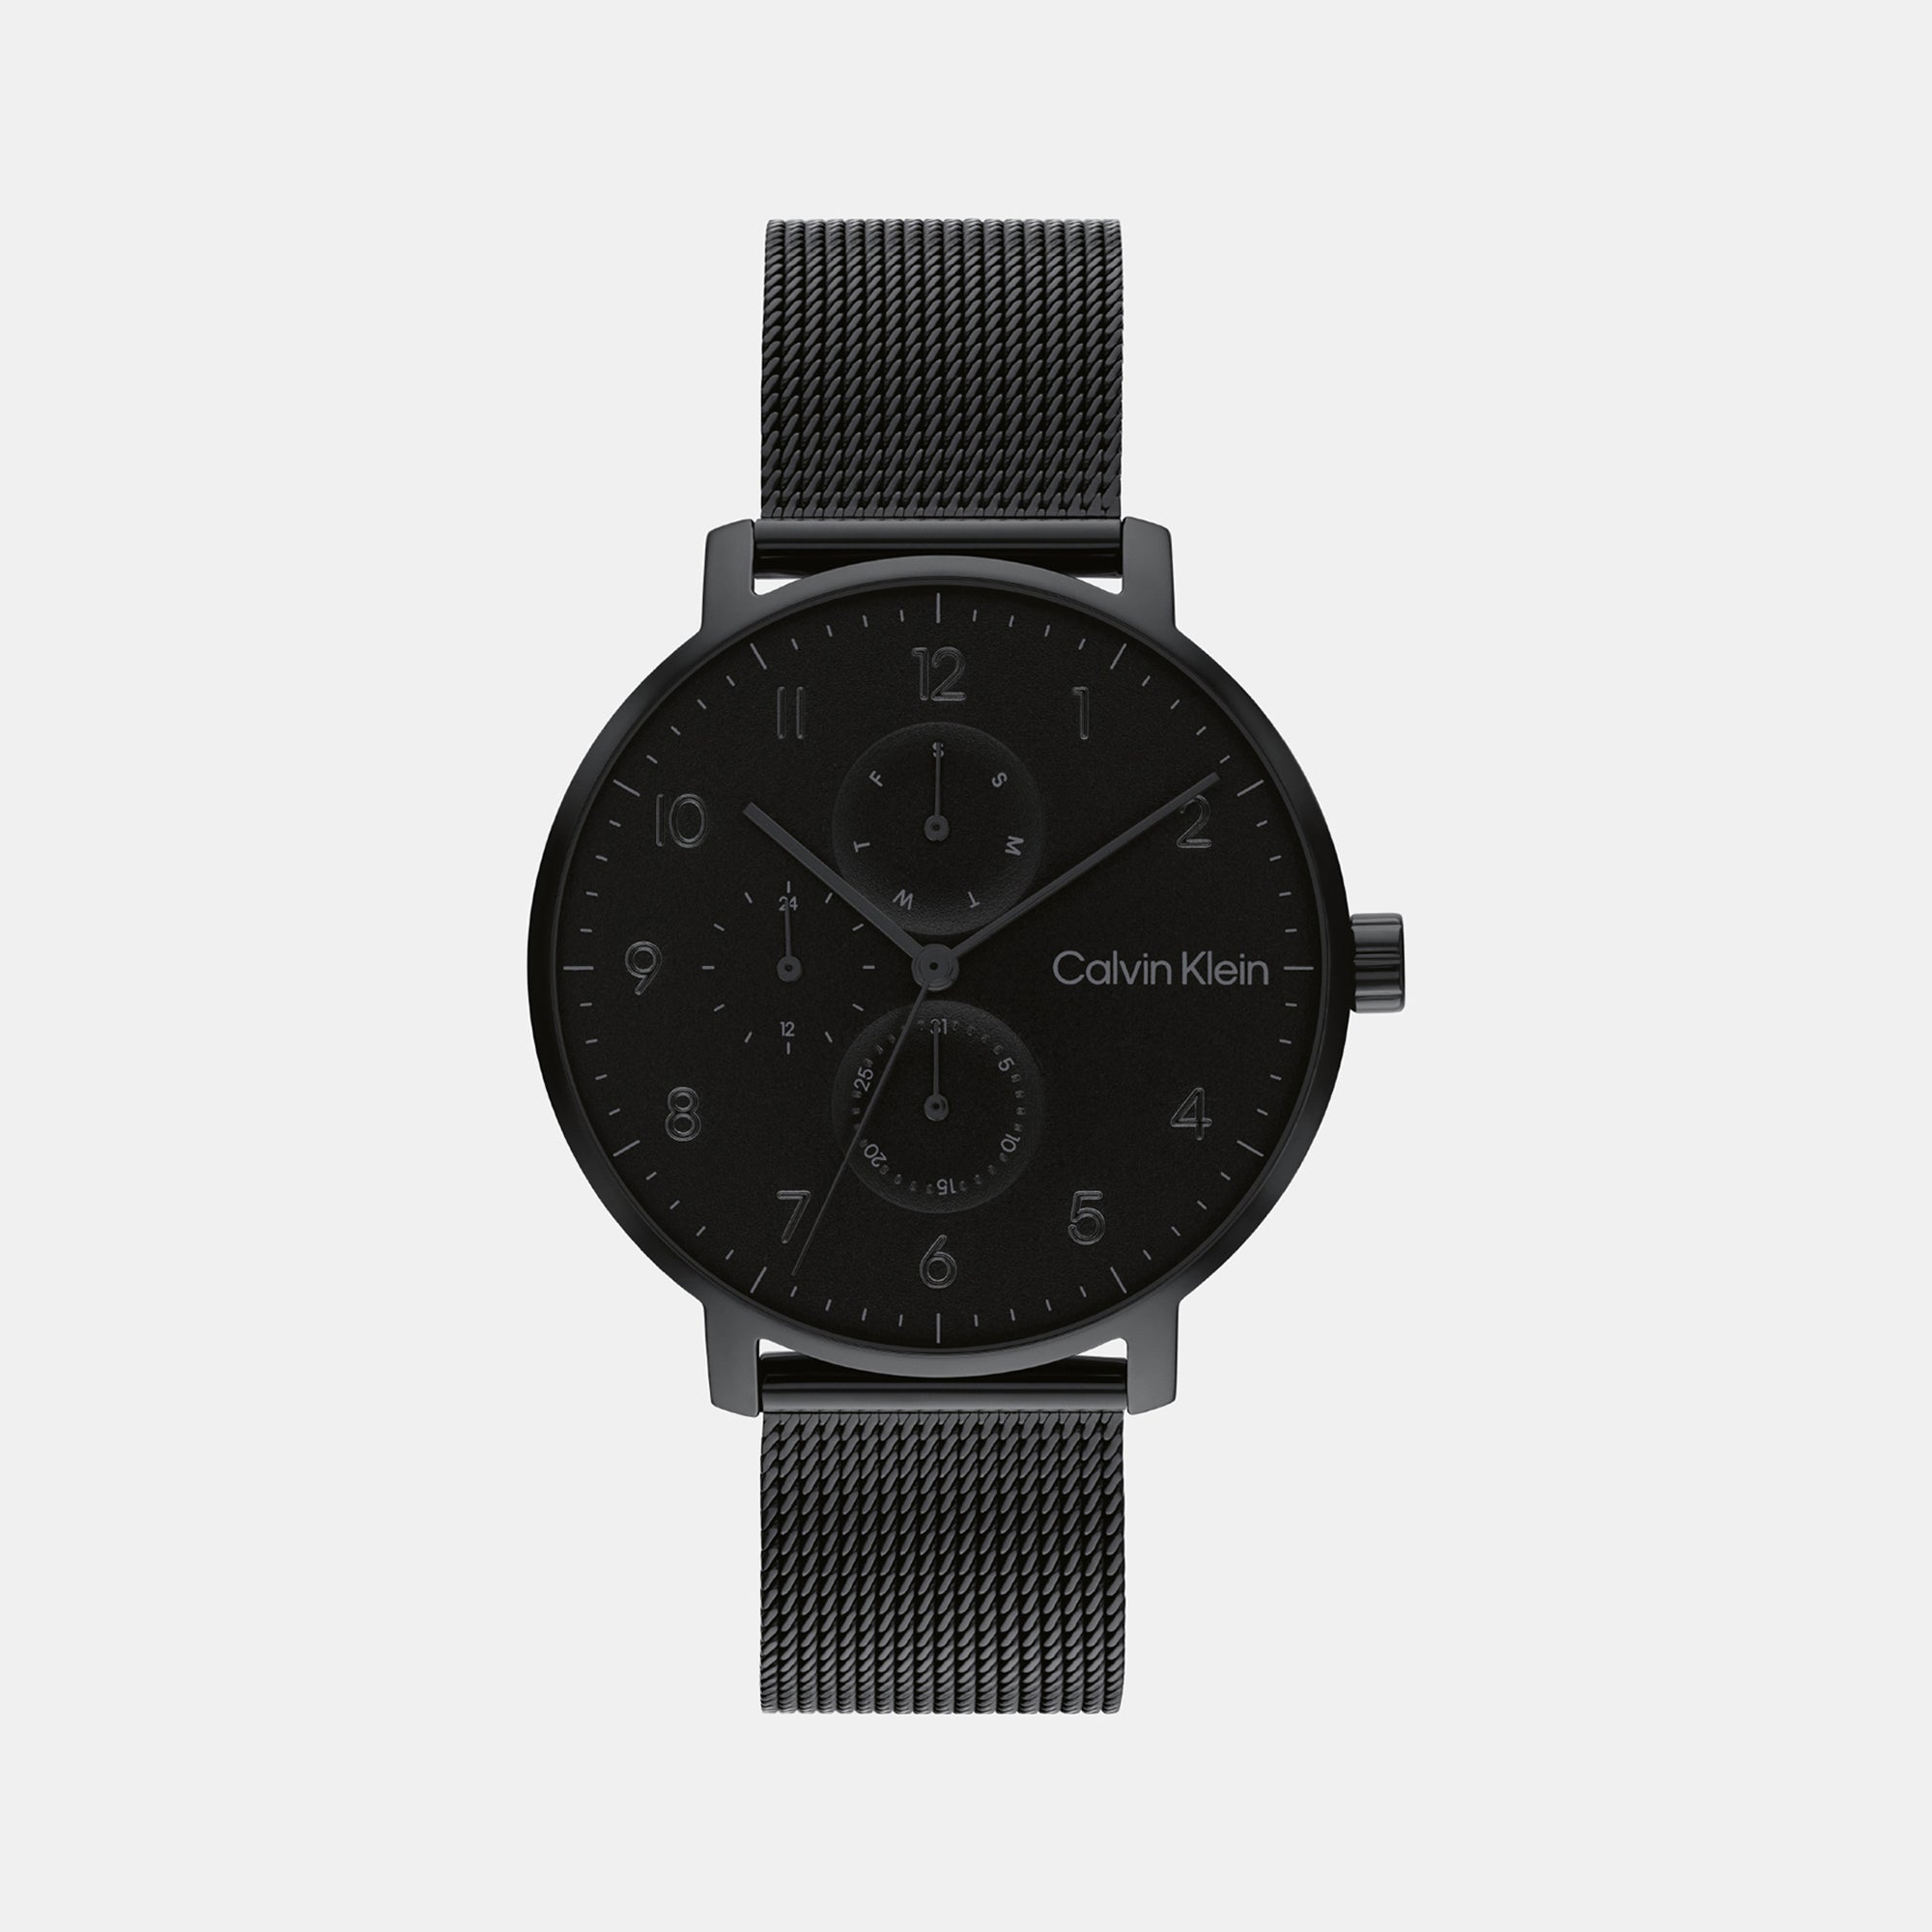 Calvin Klein K75471 00 Quartz Analog Watches | eBay